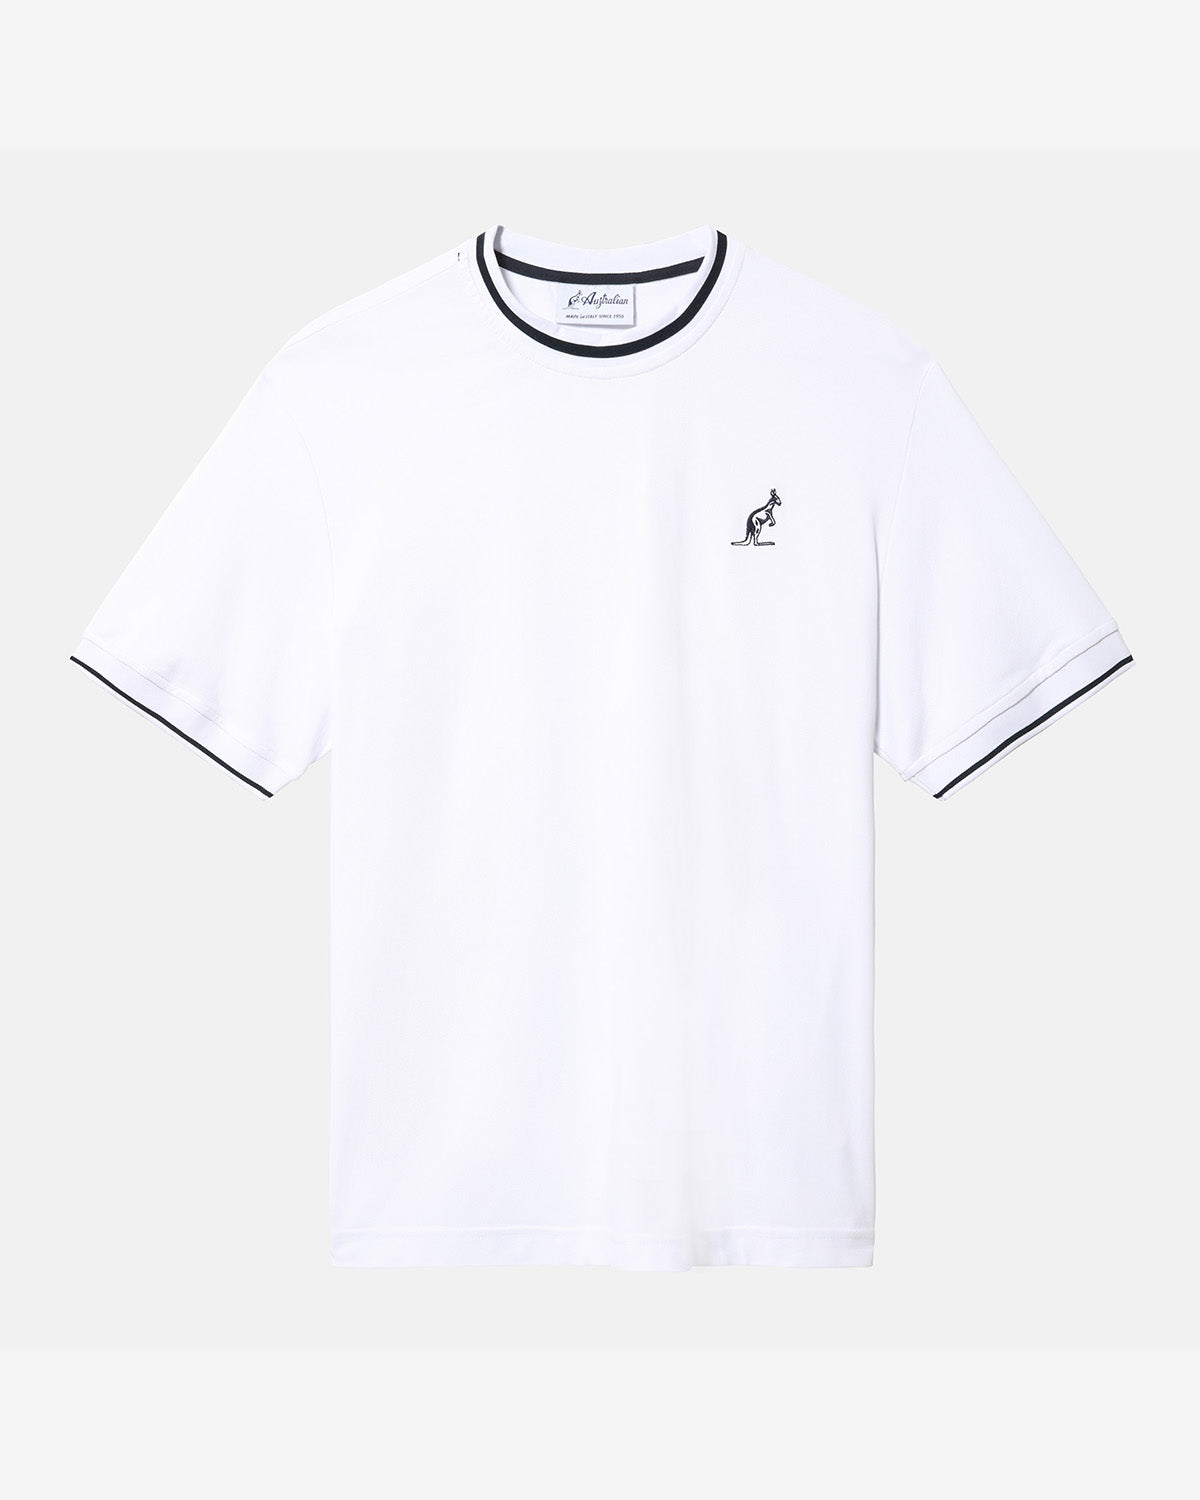 Technical Piquet T-shirt: Australian Sportswear